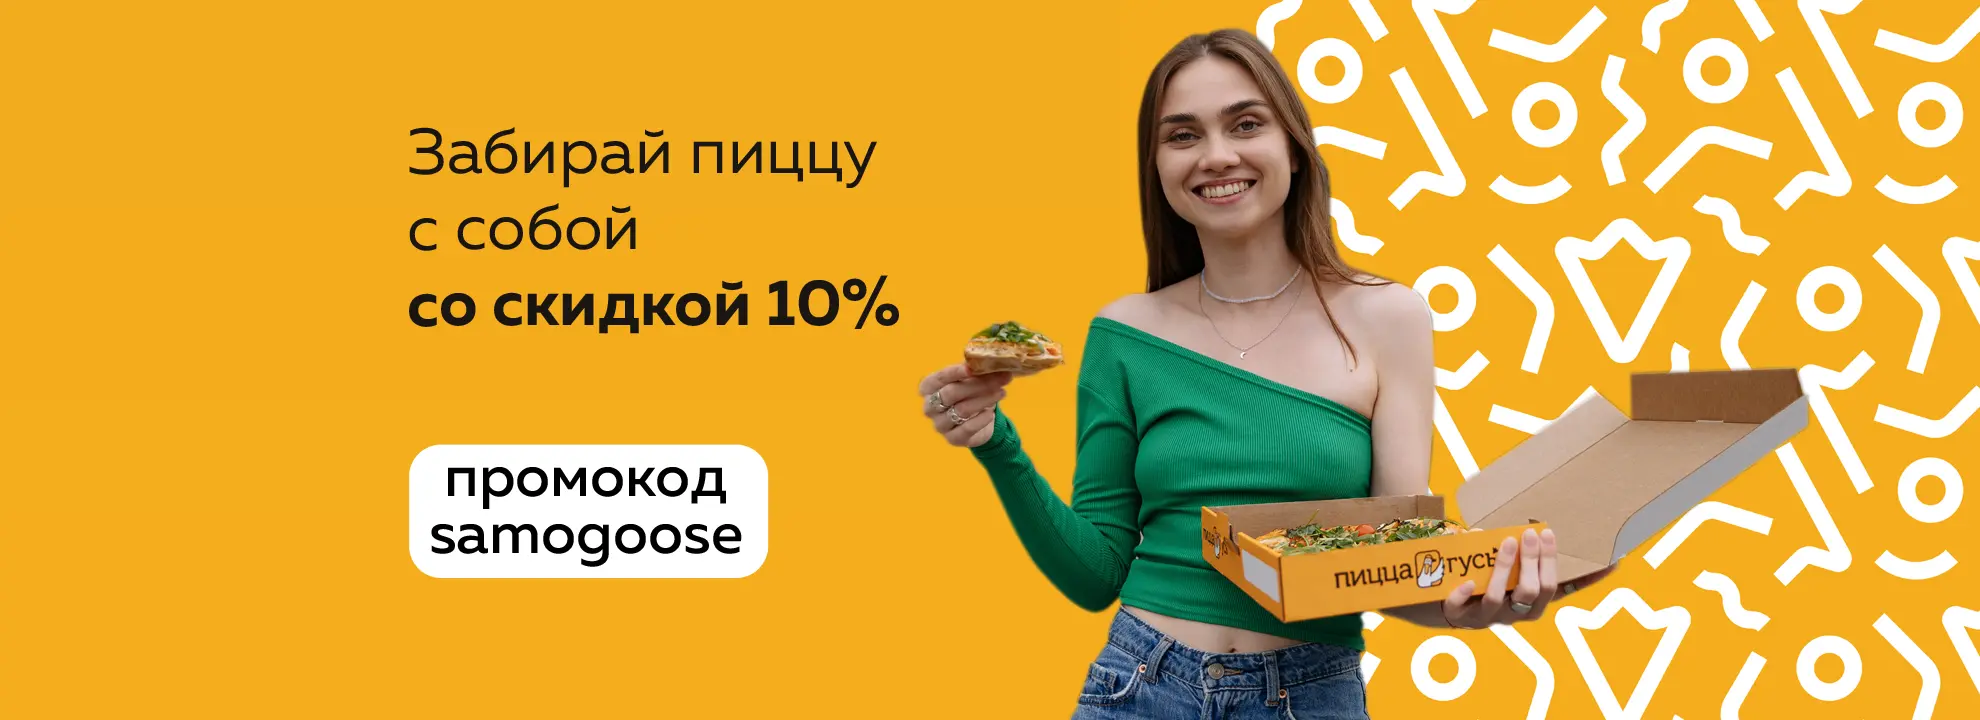 slide-https://pizza-goose.ru#/promo/samogoose